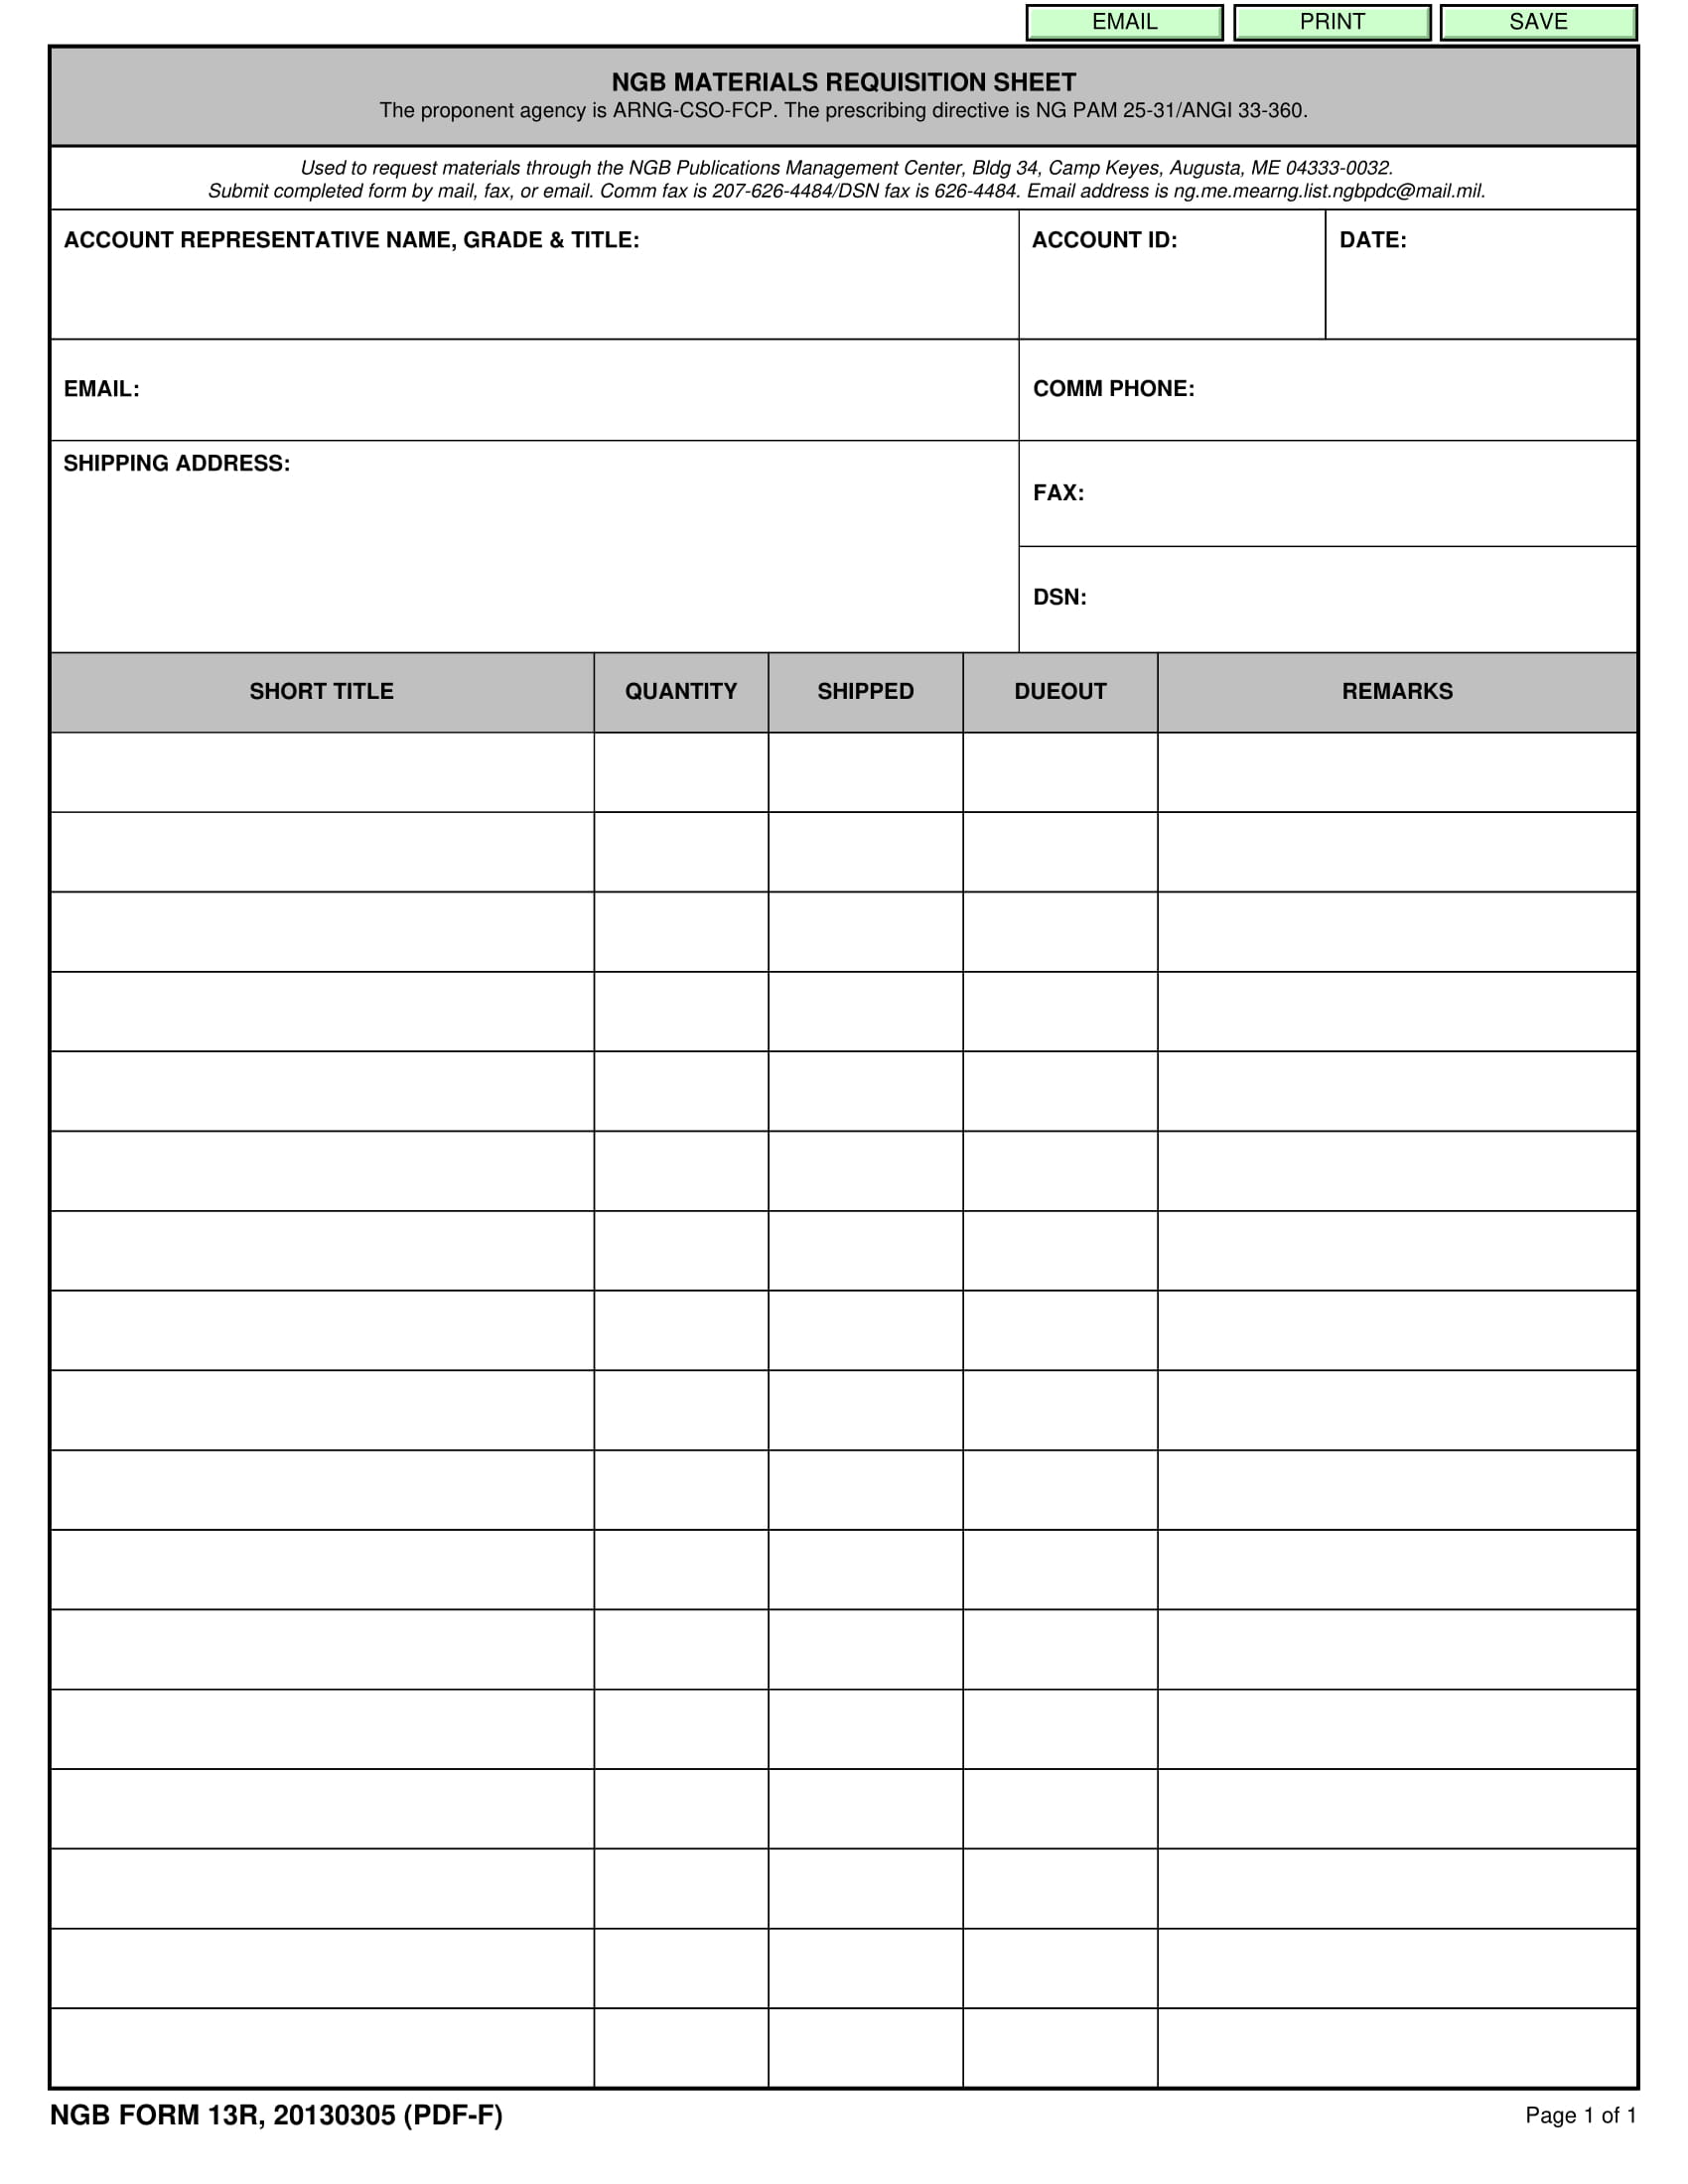 blank materials requisition sheet 1